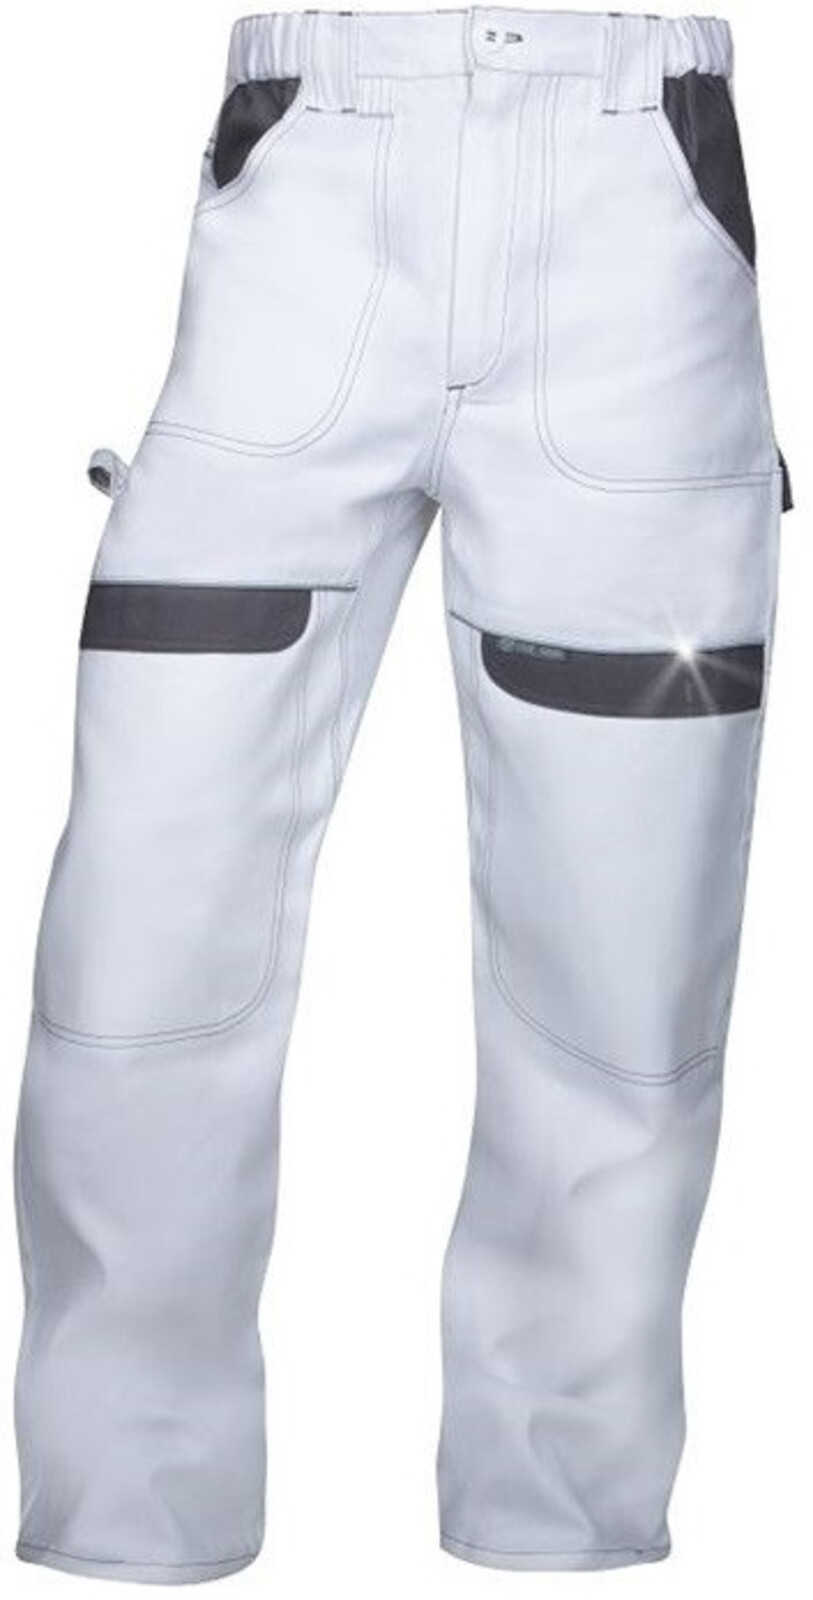 Pánske montérkové nohavice do pása Ardon Cool Trend - veľkosť: 56, farba: biela/sivá